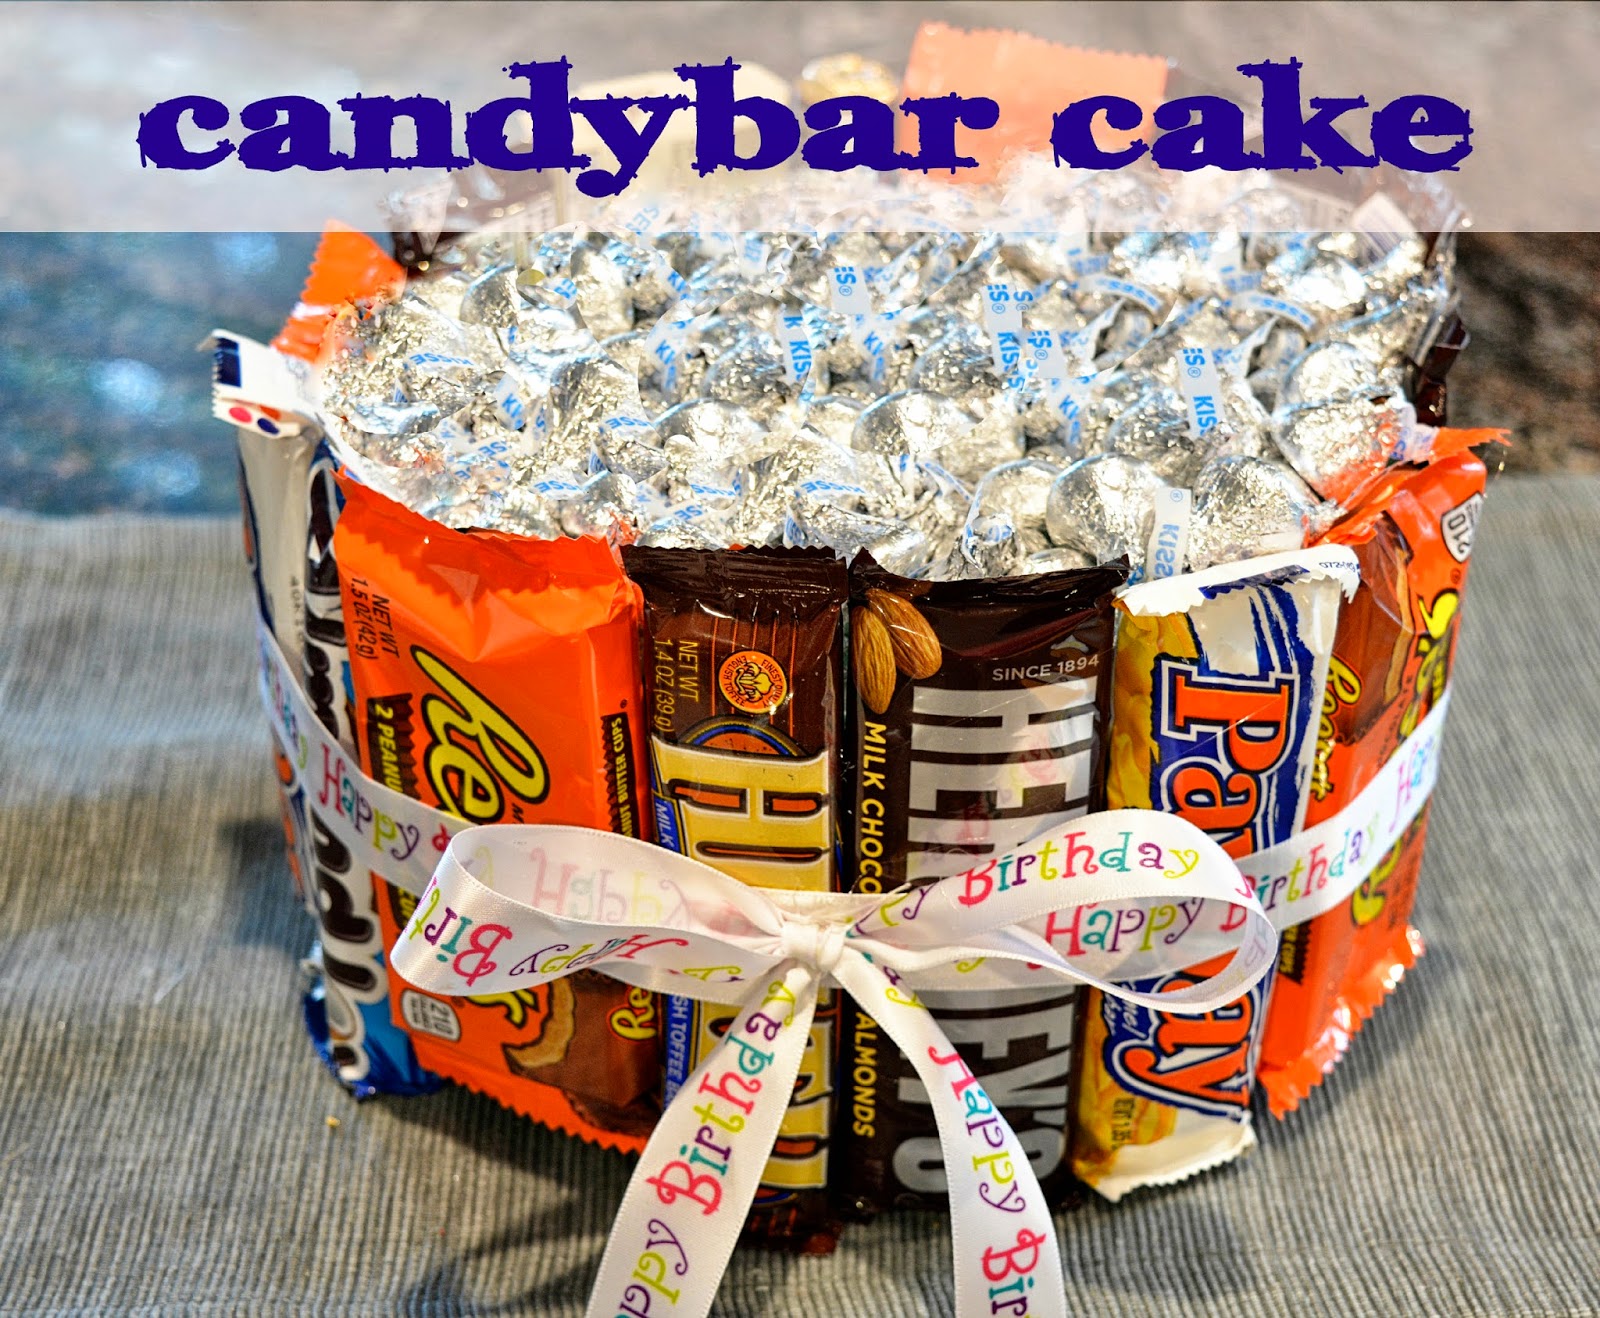 Theresa's Mixed Nuts: DIY Candy Bar Cake